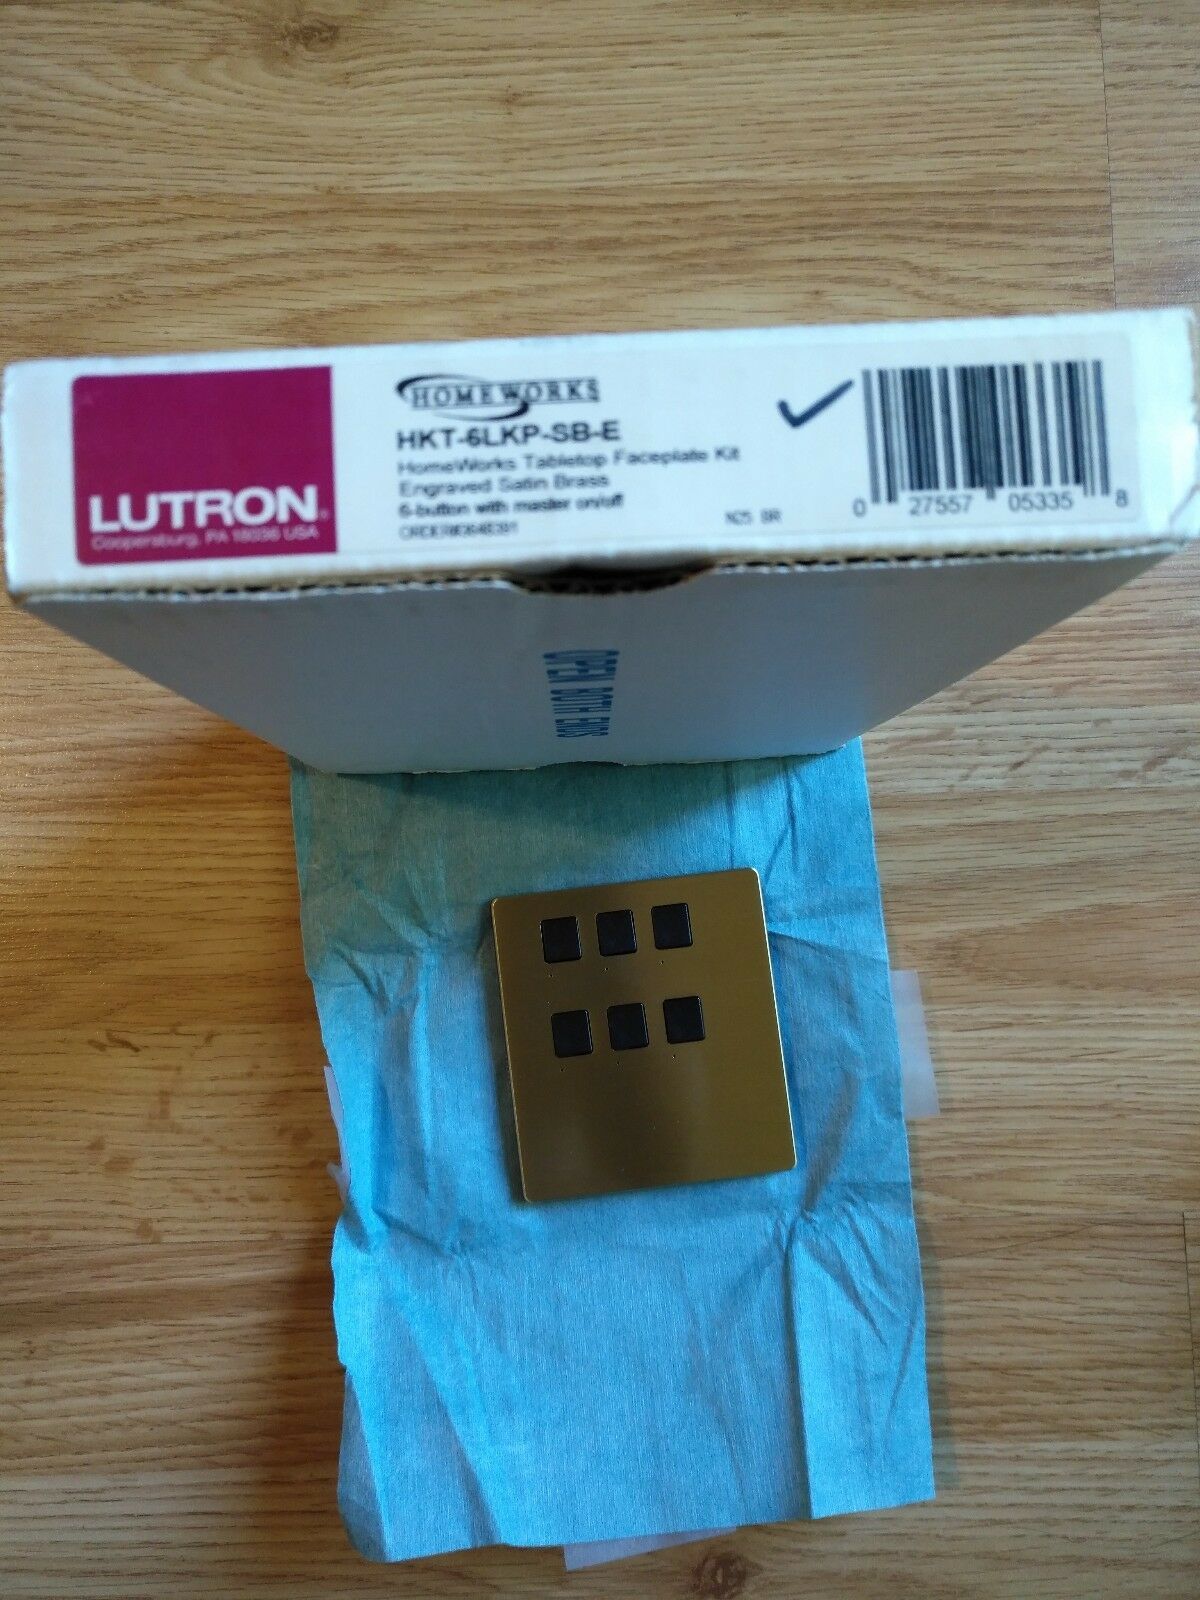 Lutron Homeworks HKT-6LKP-SB-E - $19.79